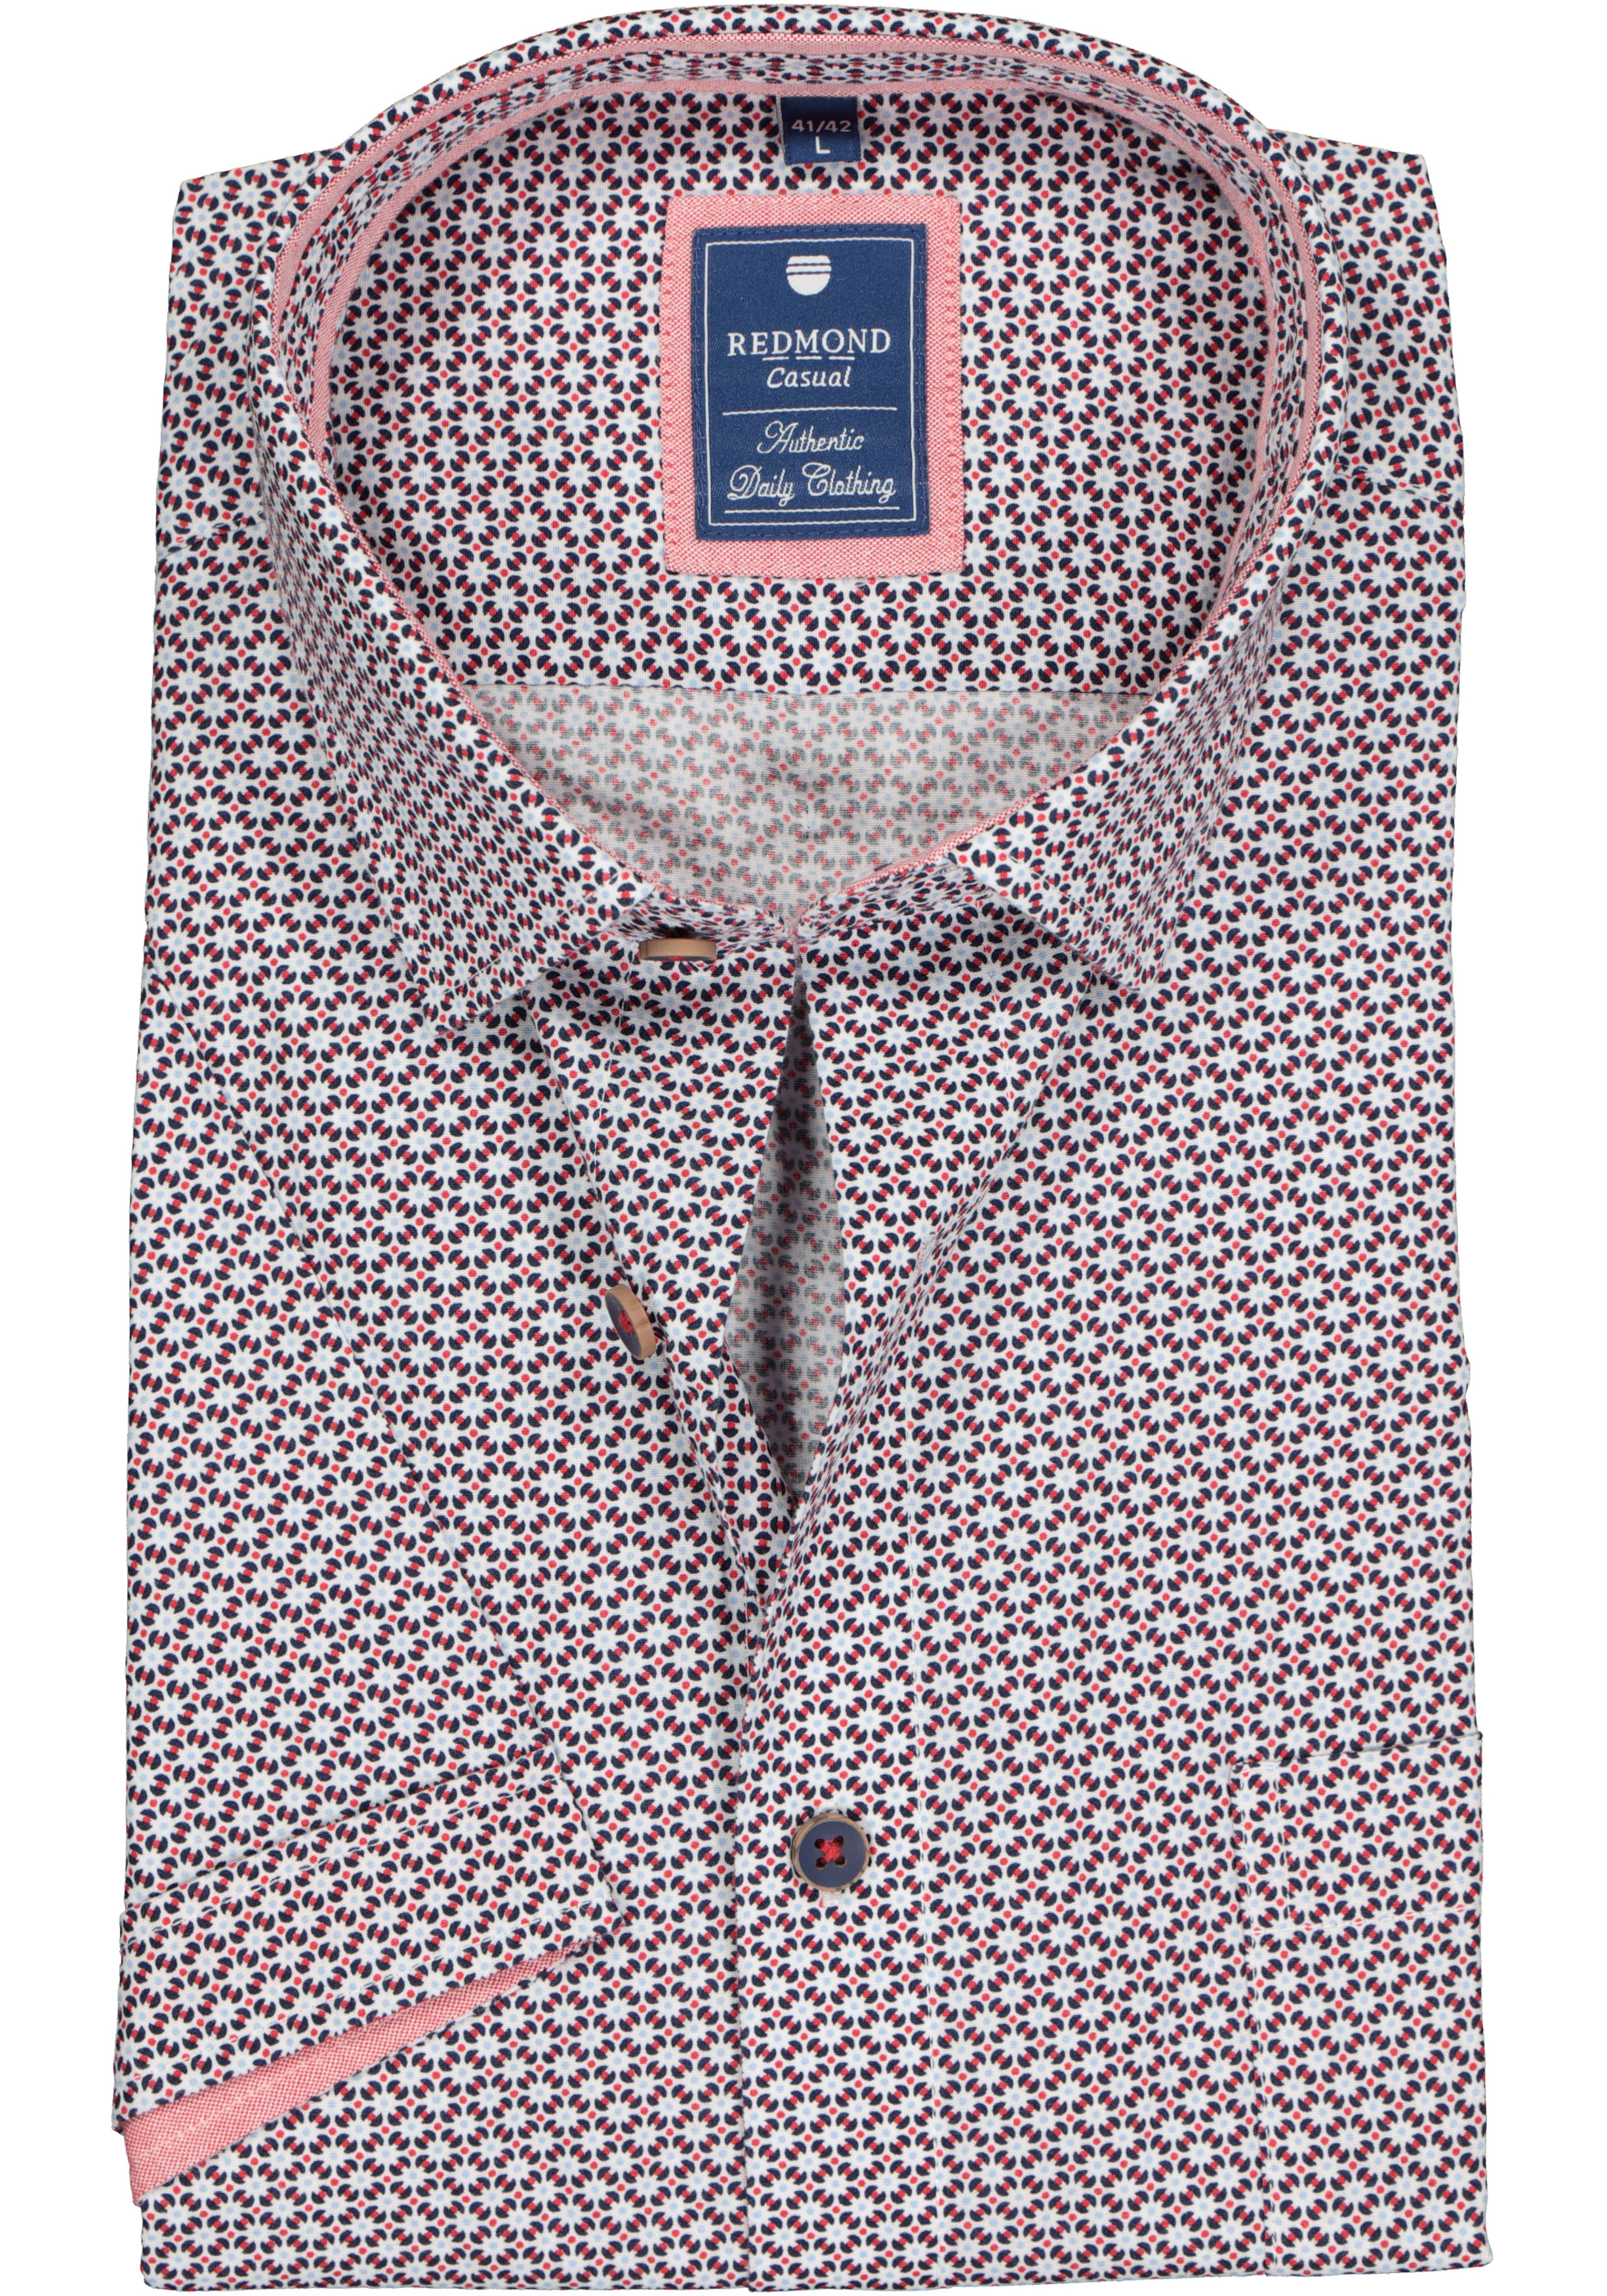 Redmond regular fit overhemd, korte mouw, poplin dessin, blauw en rood met wit